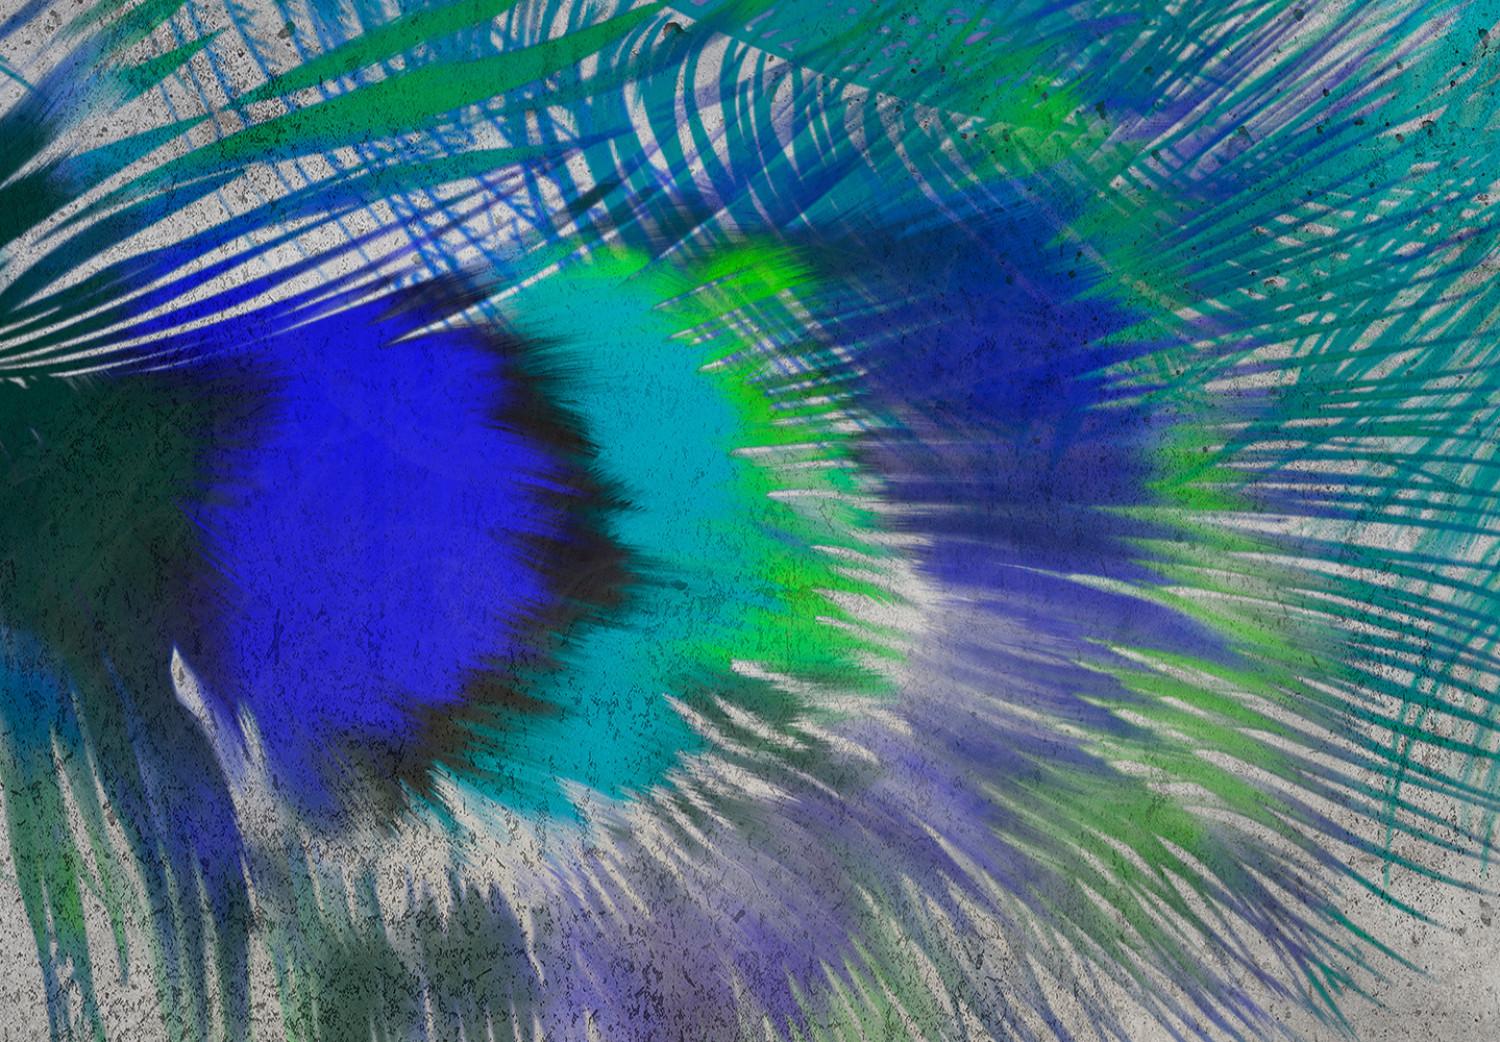 Fotomural a medida Motivo exótico - Plumas de pavo real azul en fondo de cemento gris